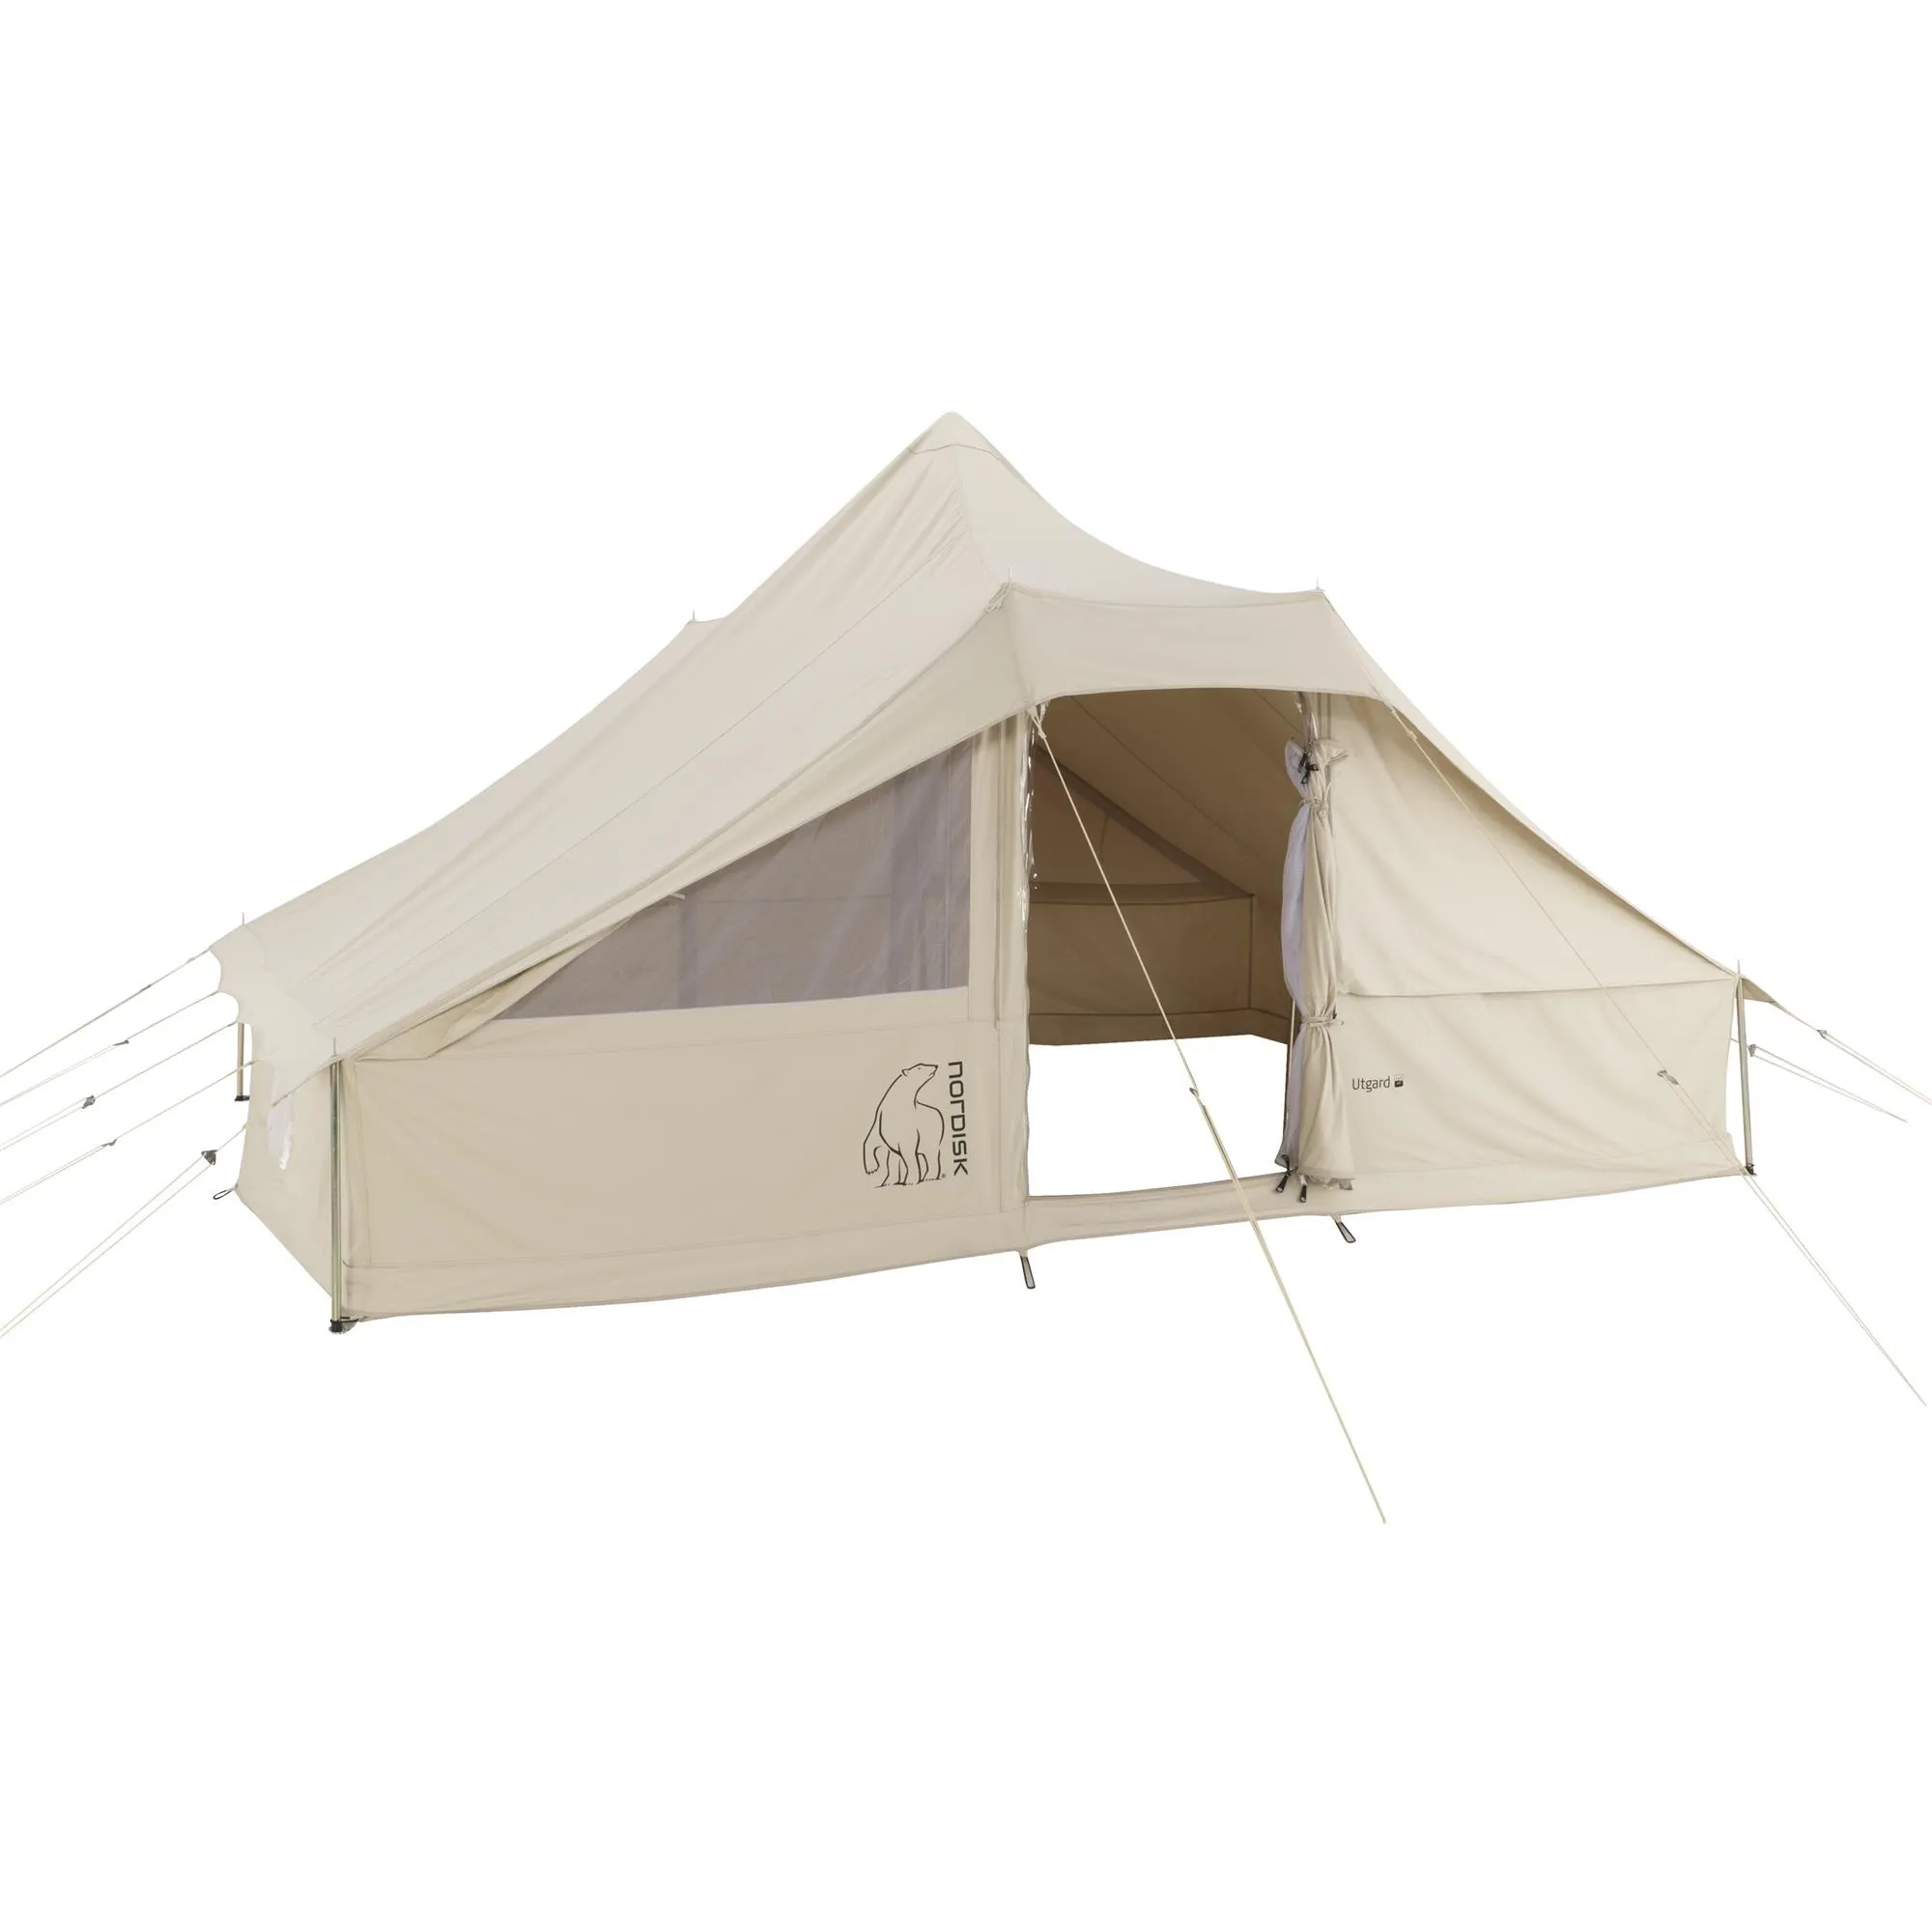 Utgard-13,2-m2-142010-nordisk-classic-retro-square-tent-technical-cotton-1.jpg